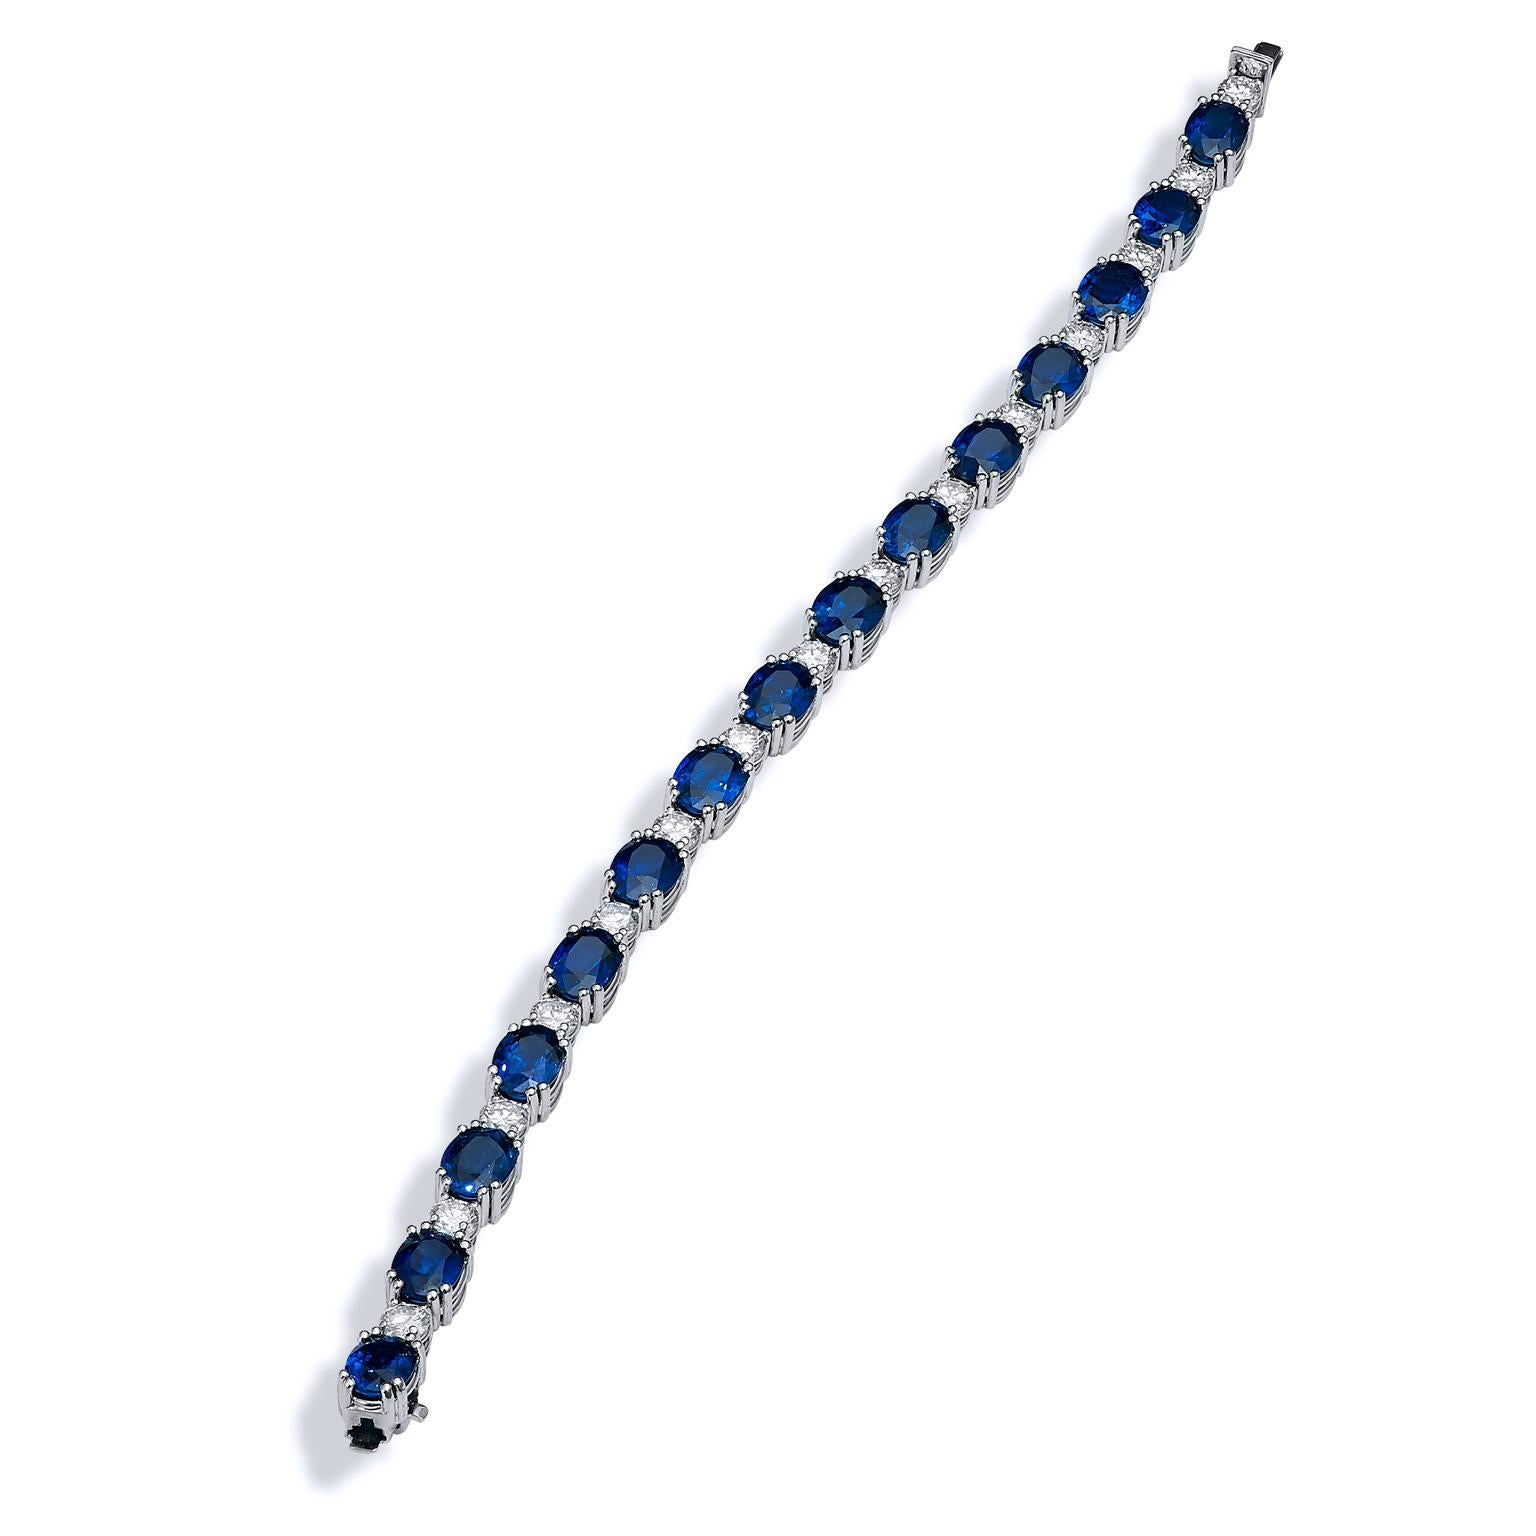 Bracelet de tennis en saphir bleu royal et diamants 

Le saphir est depuis longtemps apprécié pour ses étonnantes nuances de bleu et ses associations célestes. Pierre de rêve pour les bijoutiers, le saphir offre des nuances de couleurs parmi les